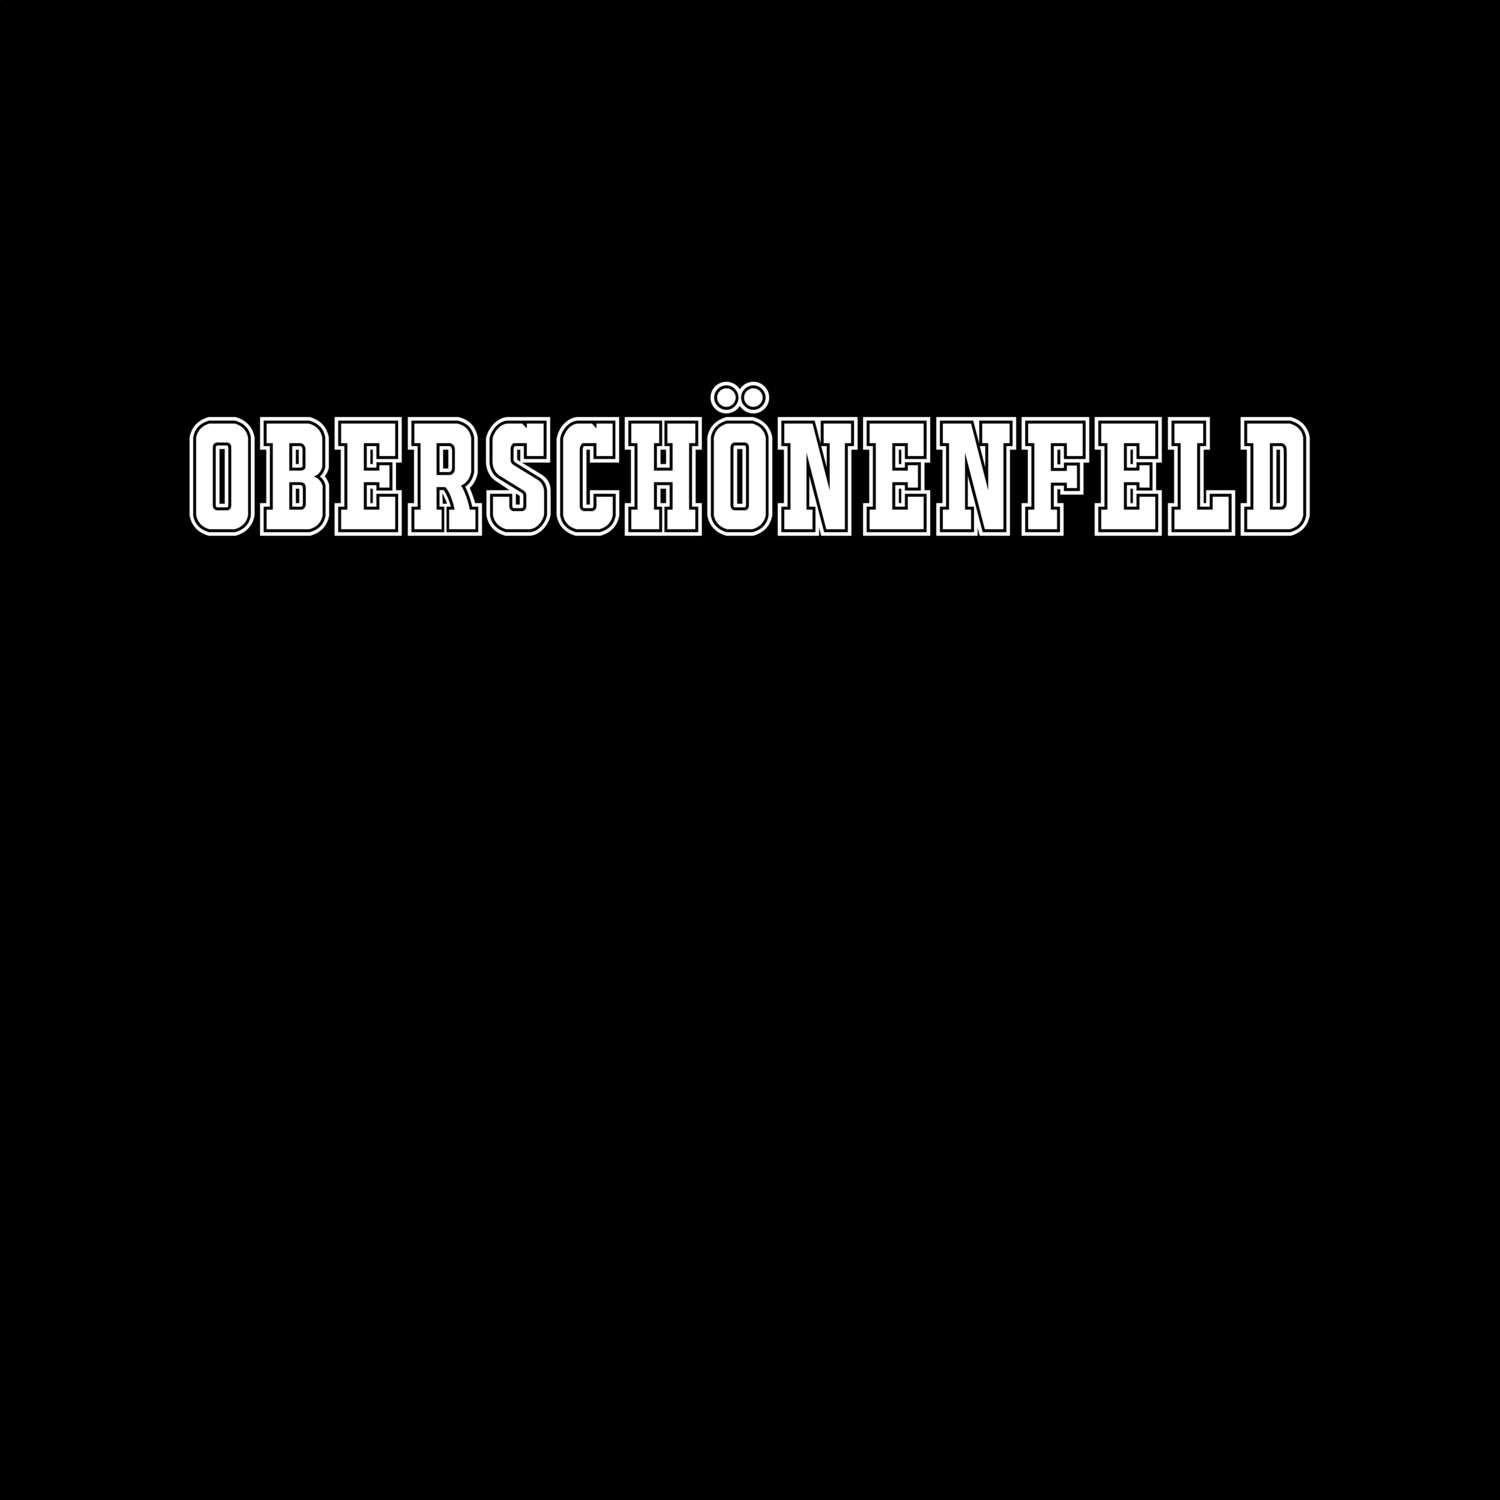 Oberschönenfeld T-Shirt »Classic«